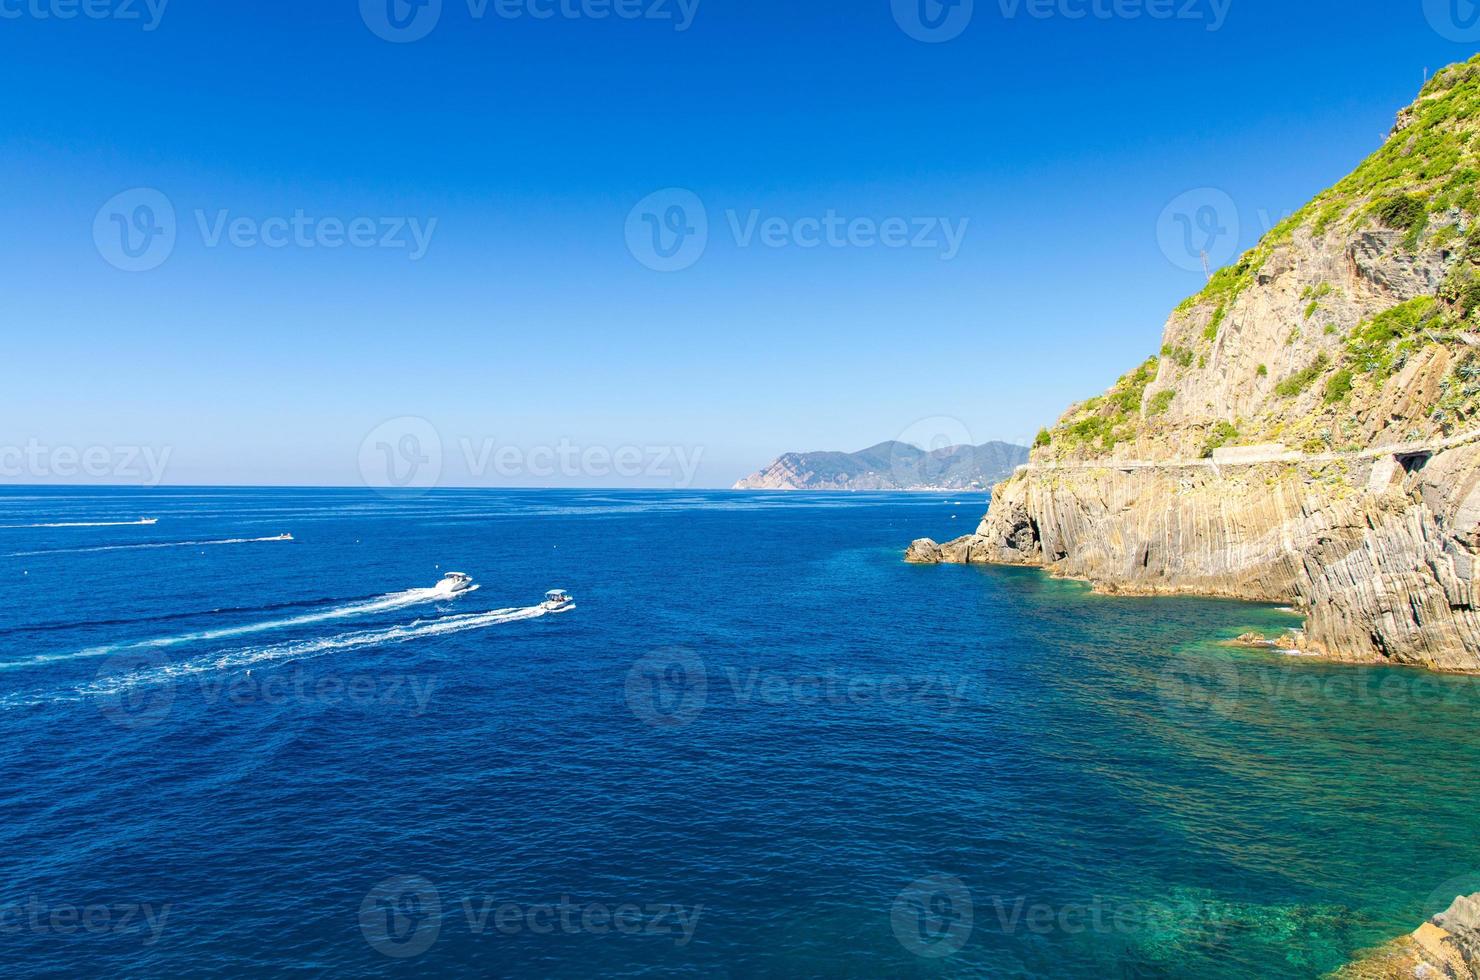 twee jachten boten varen op het water van de Ligurische en Middellandse Zee in de buurt van de kustlijn van de riviera di levante van het nationaal park Cinque Terre kust met blauwe lucht kopieerruimte, het dorp Riomaggiore, Ligurië, Italië foto